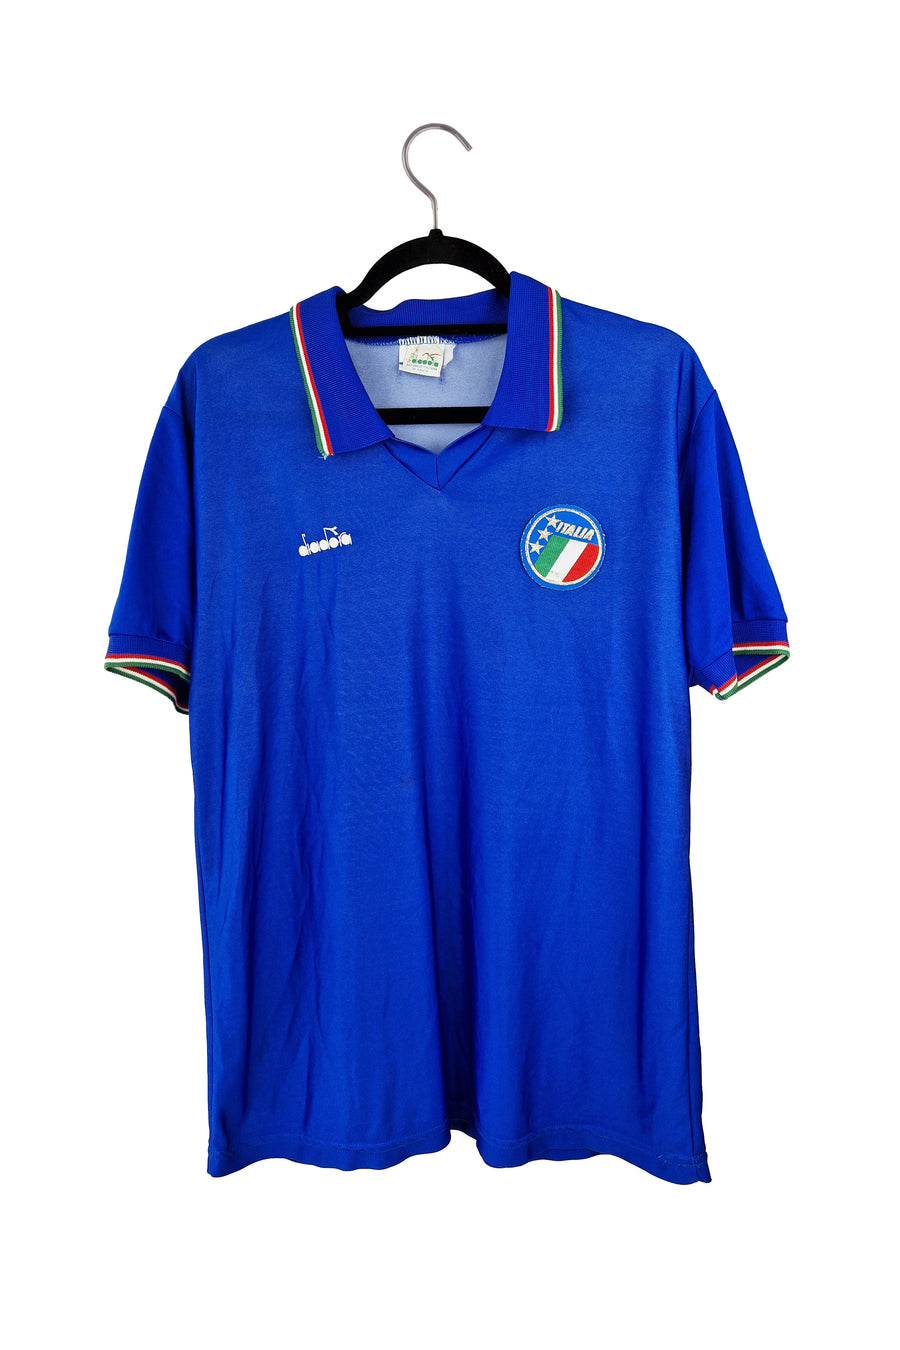 Italy 1990 Home Football Shirt